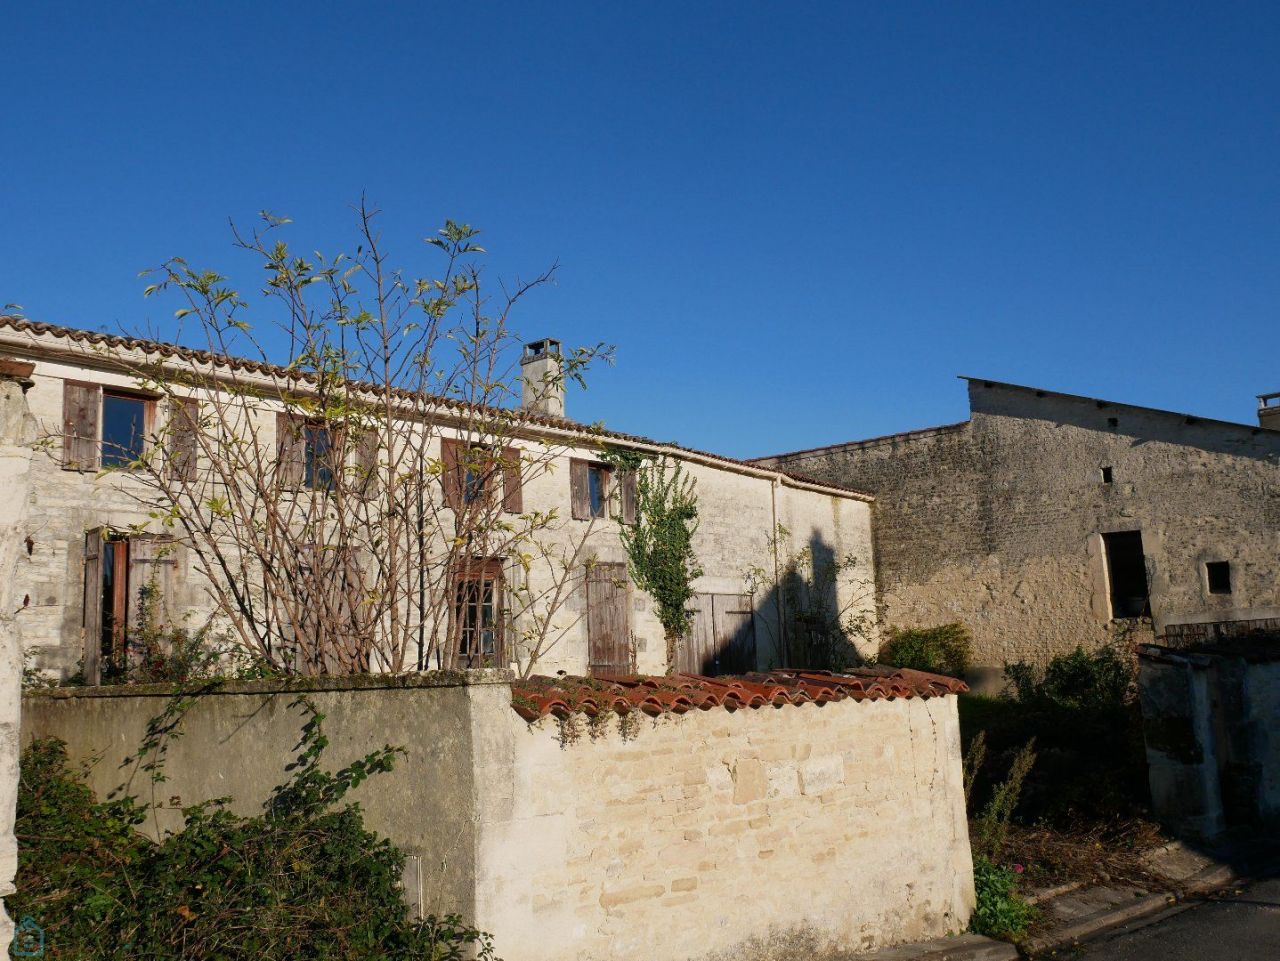 Maison en Charente-Maritime, France - image 1